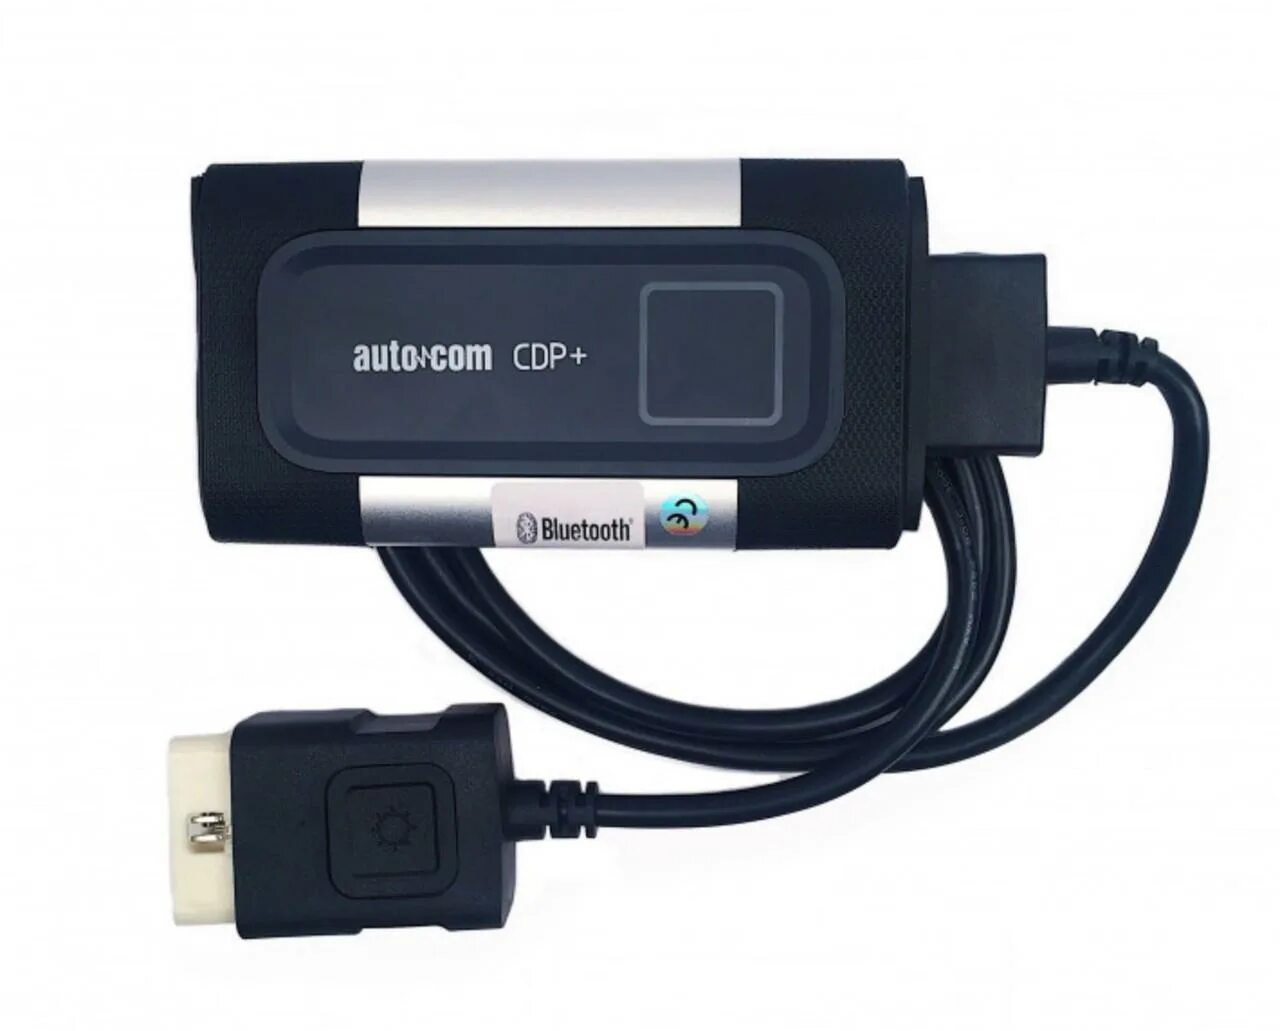 Автоком cdp. Autocom CDP+USB. Автосканер Autocom CDP. Autocom CDP USB + Bluetooth. Мультимарочный сканер Autocom.